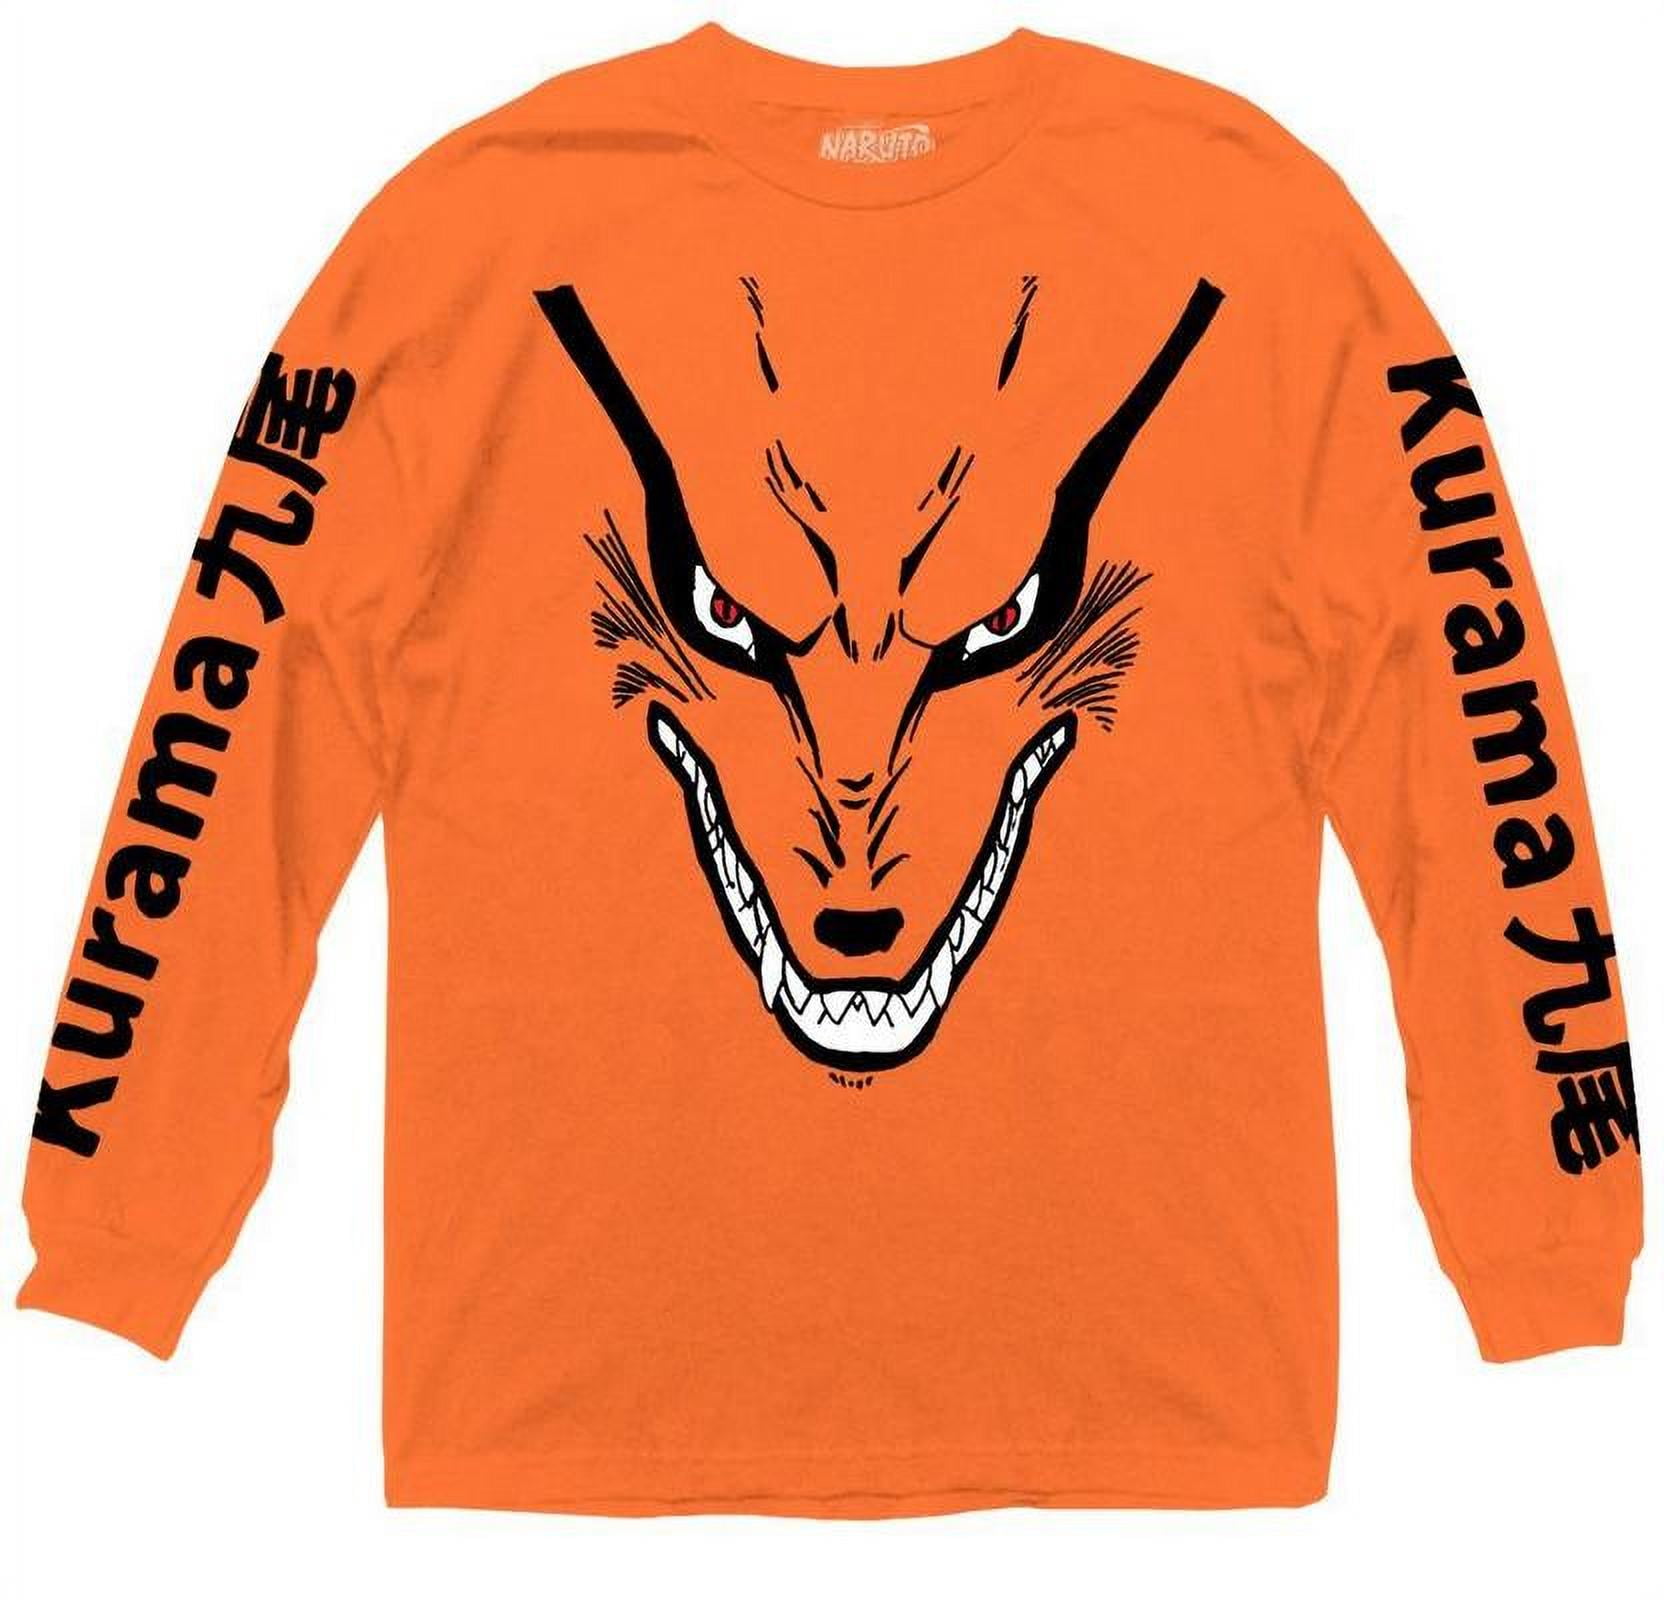 A Cat Suki - Naruto T-Shirt by VP021 - The Shirt List